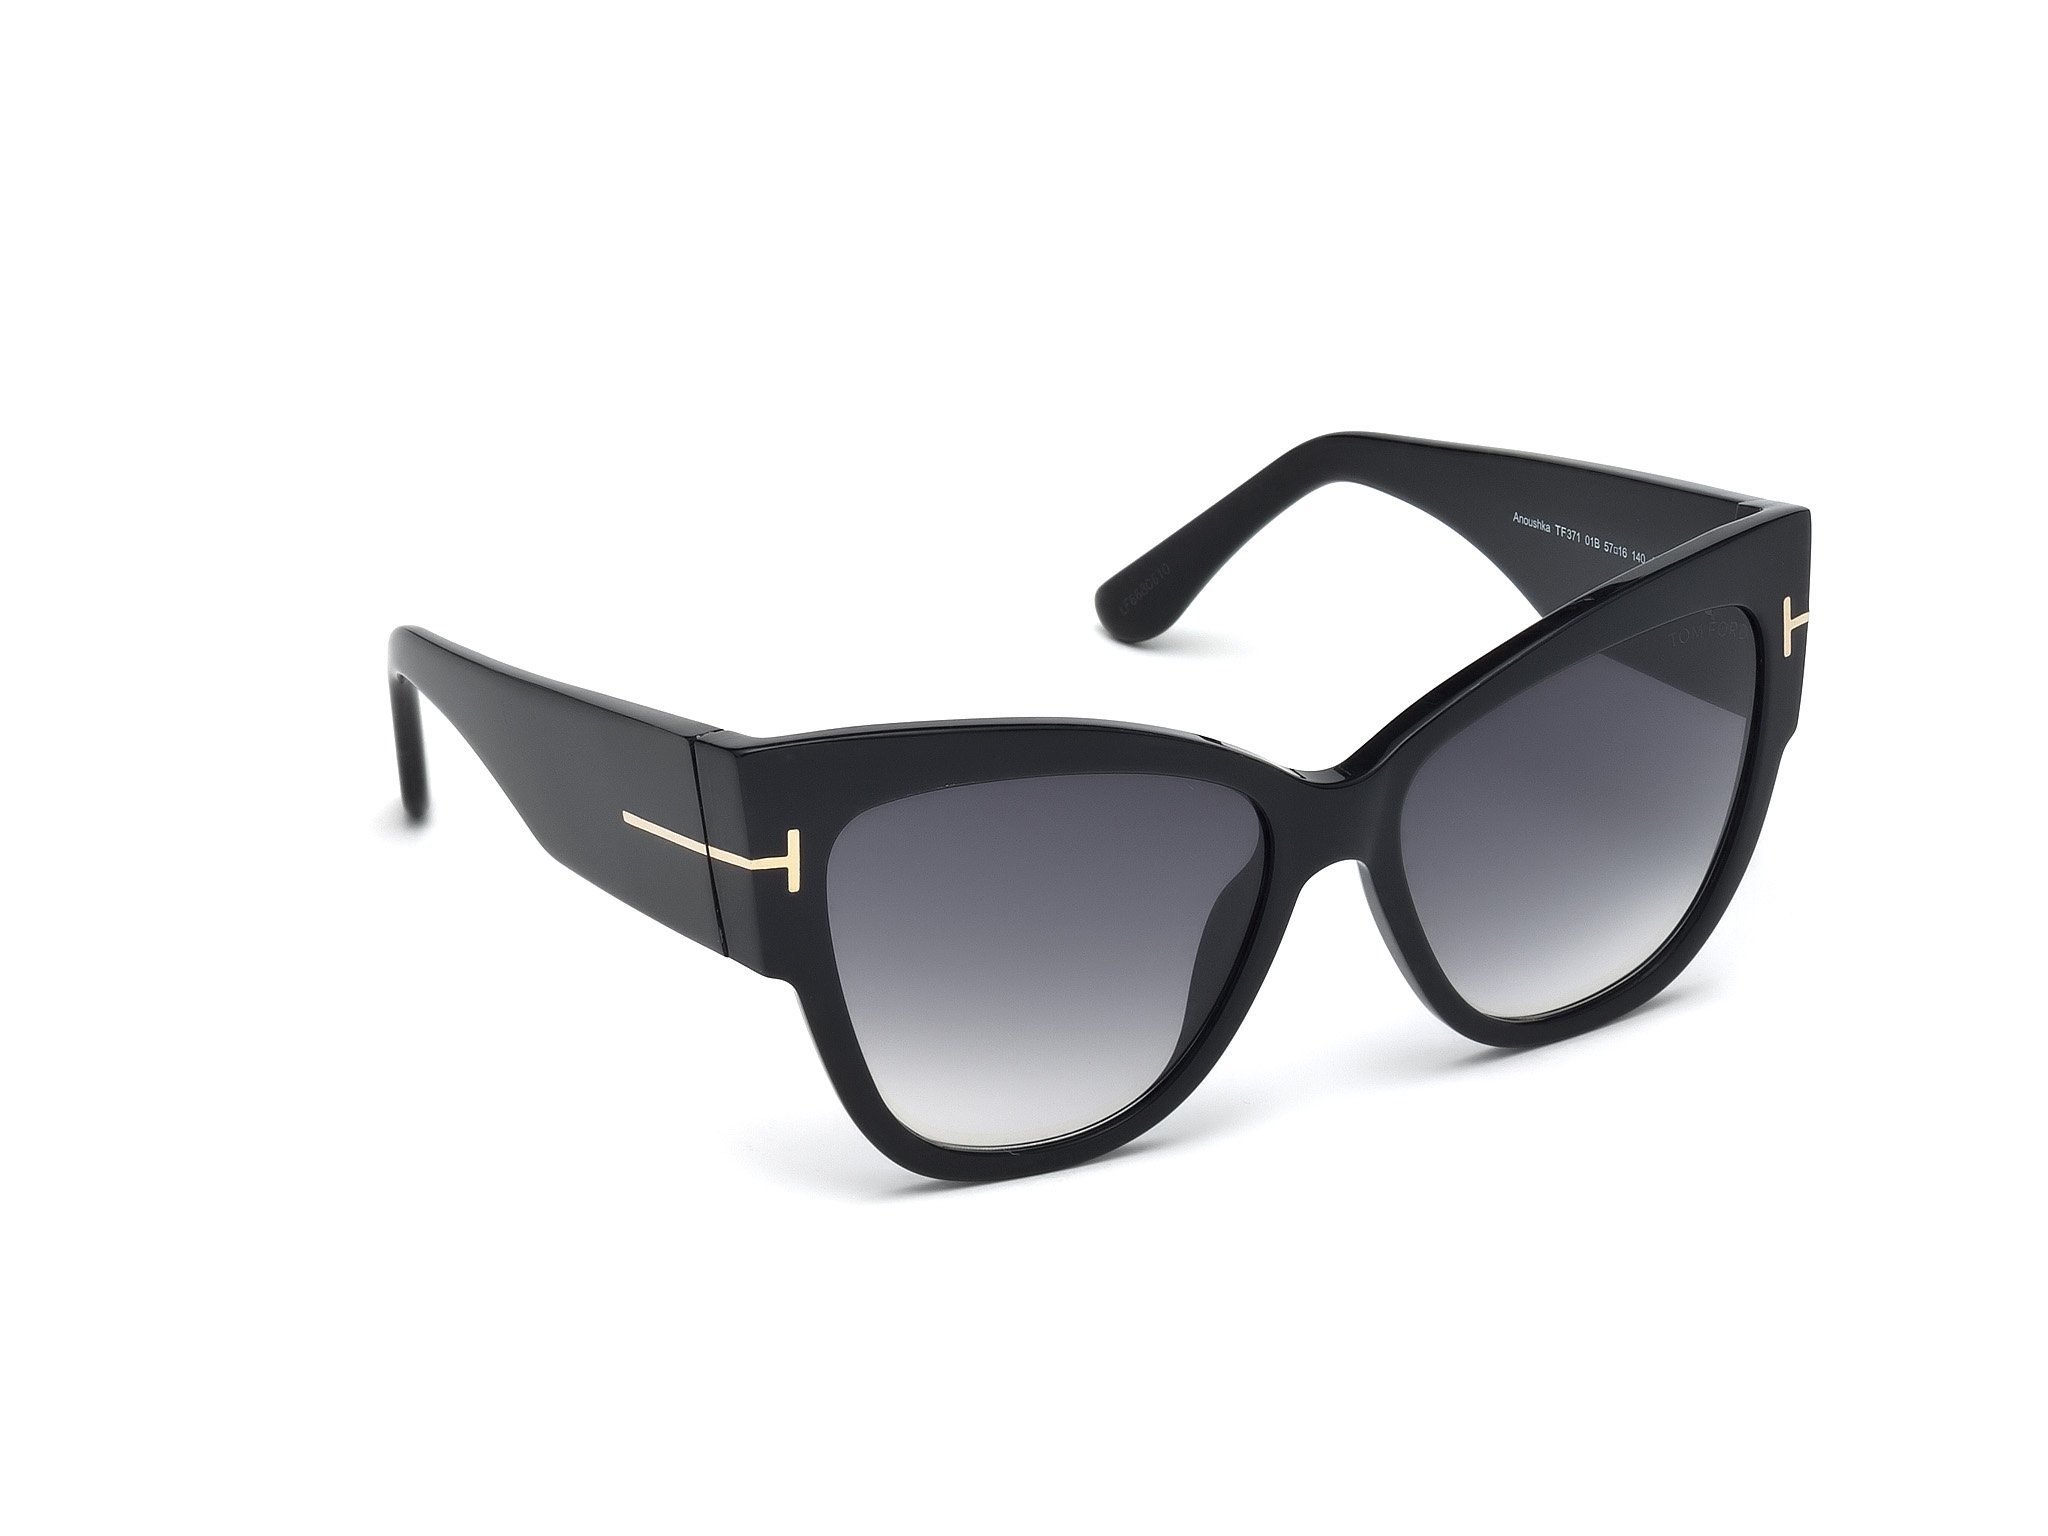 Das Bild zeigt die Sonnenbrille Anoushka FT0371 von der Marke Tom Ford in schwarz von links